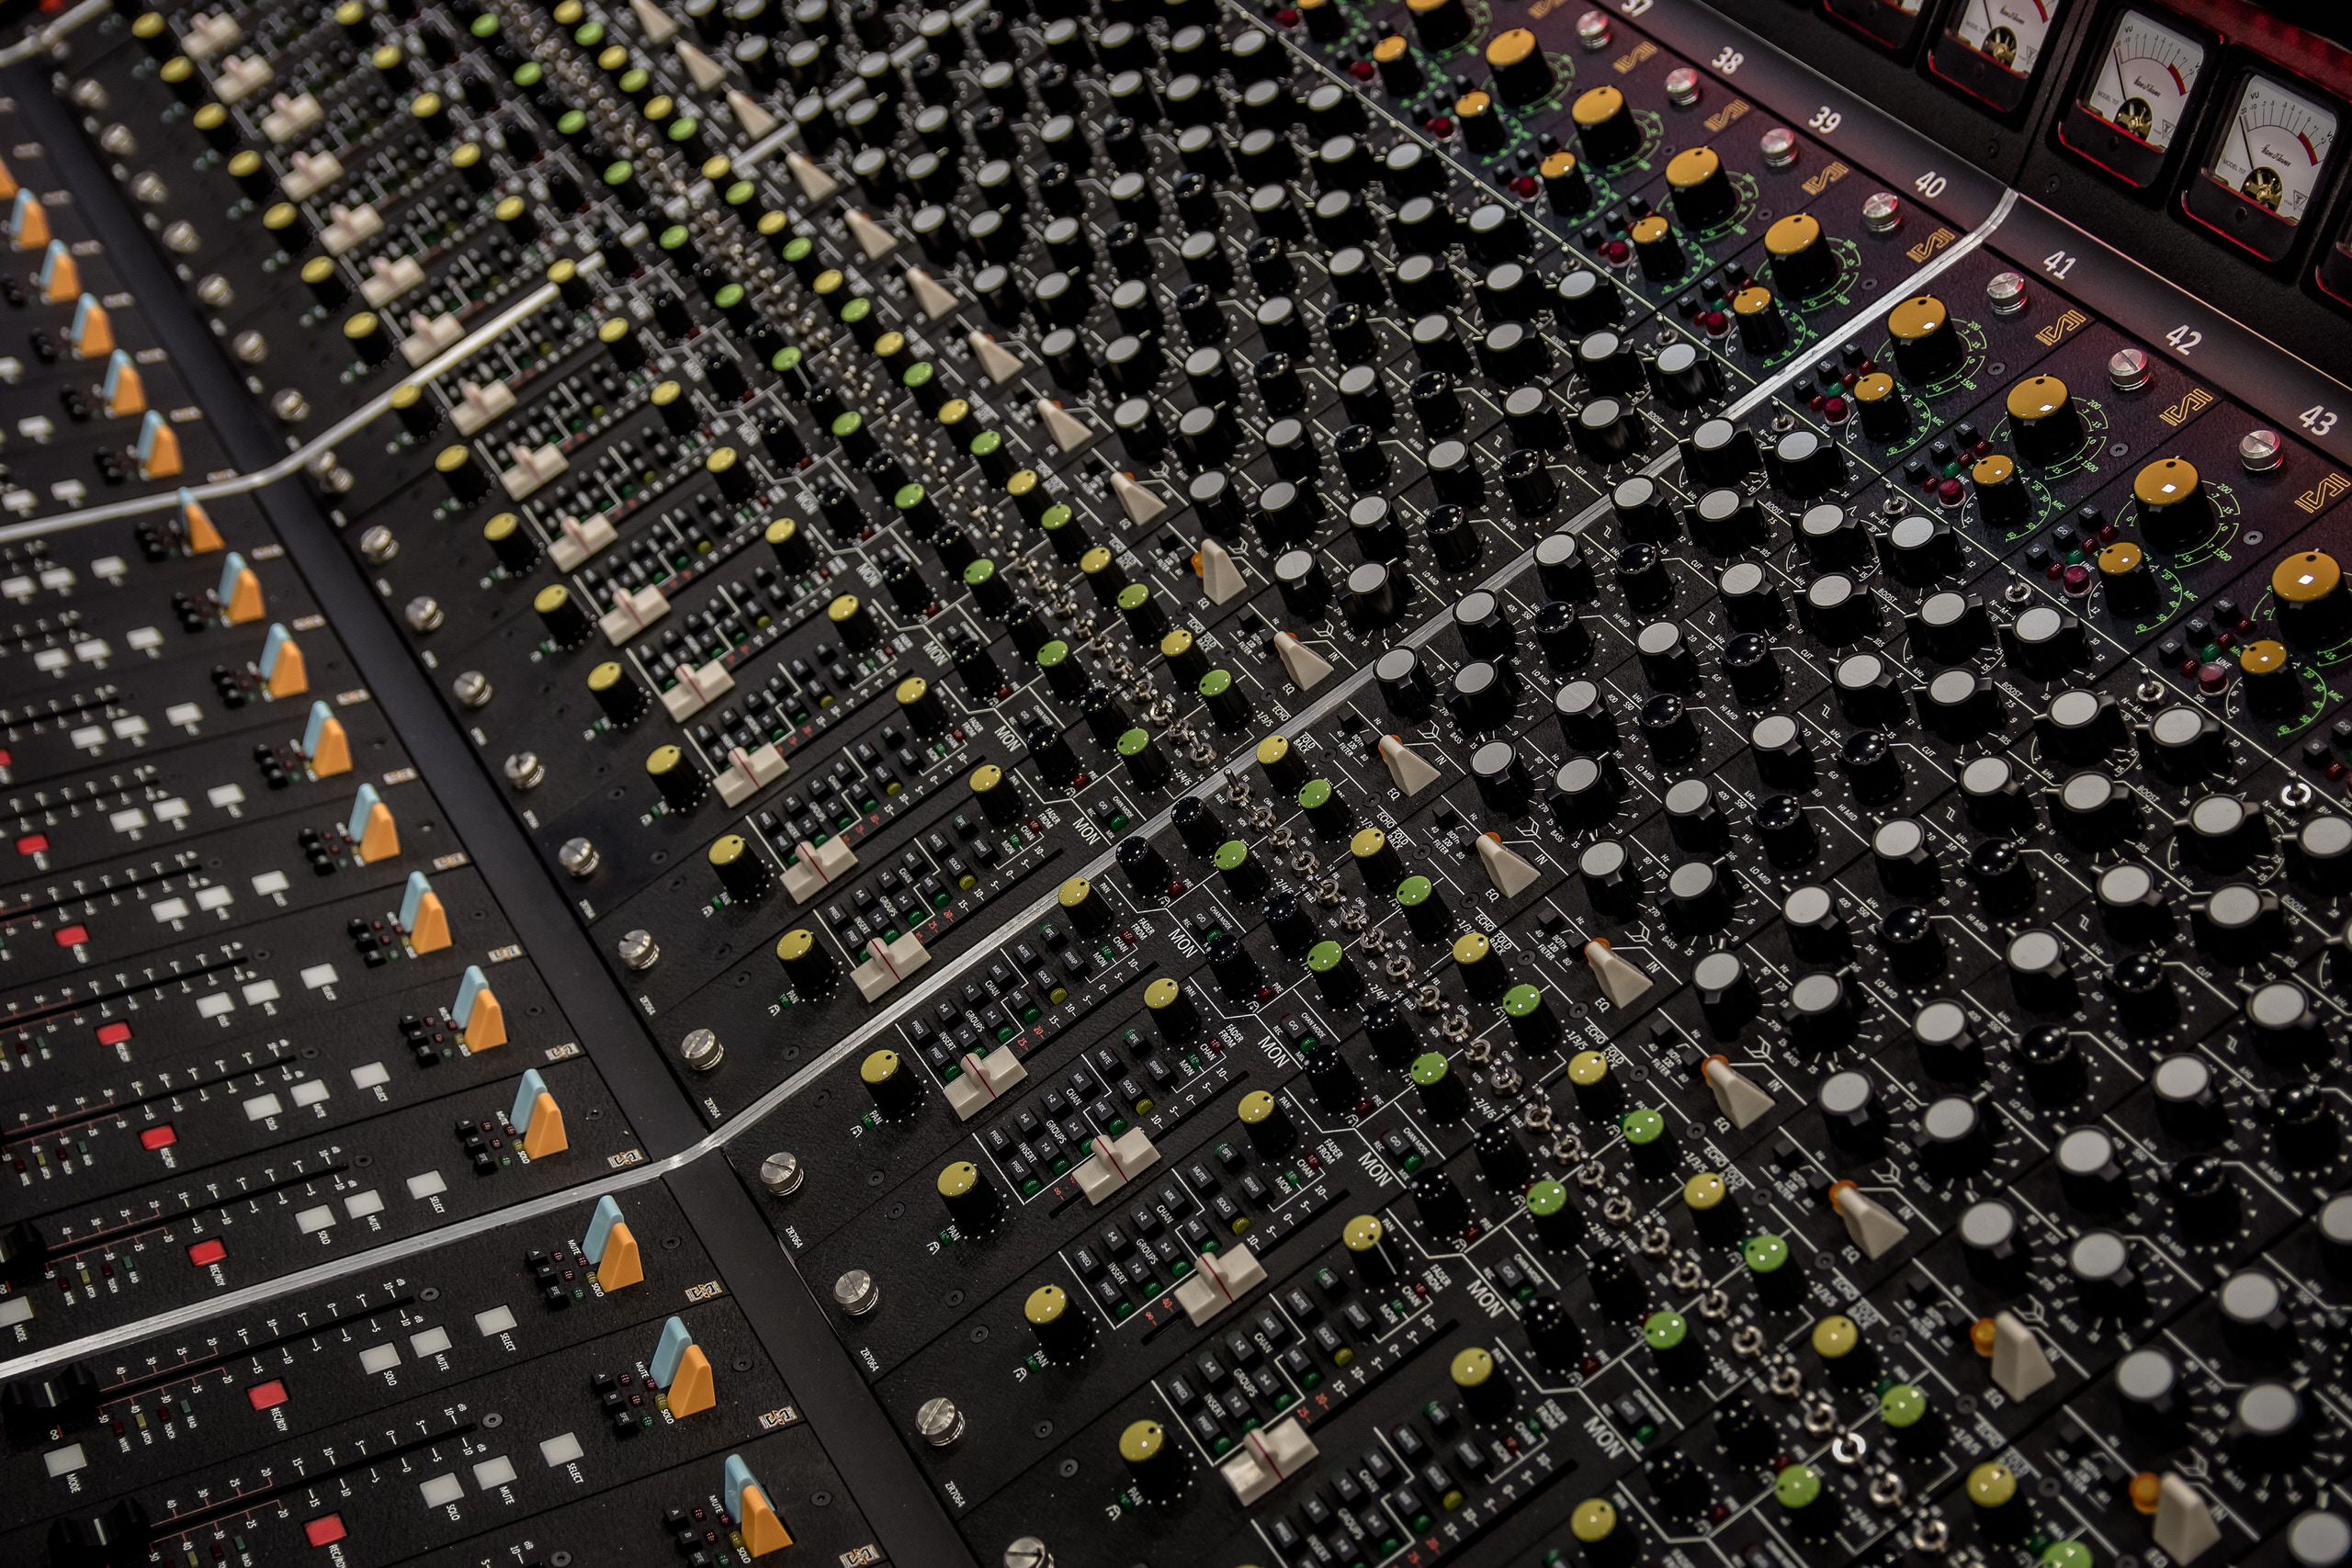 Project Awesome Audio của Adobe sẽ có thể xử lý tạp âm khi ghi âm chỉ bằng một nút bấm